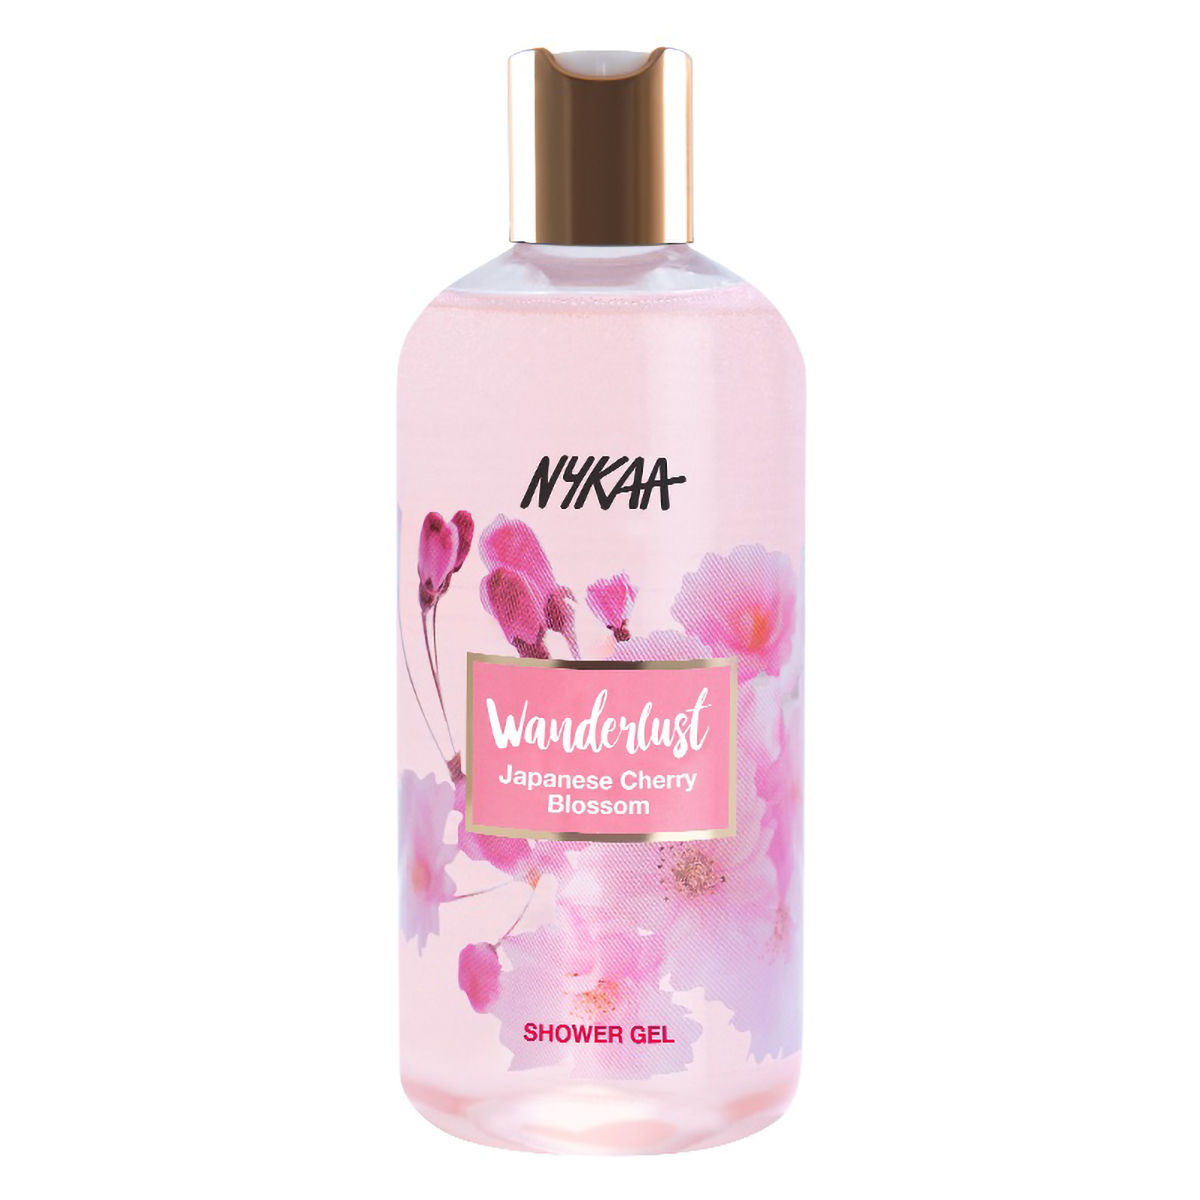 Buy Nykaa Wanderlust Japanese Cherry Blossom Shower Gel, 300 ml Online